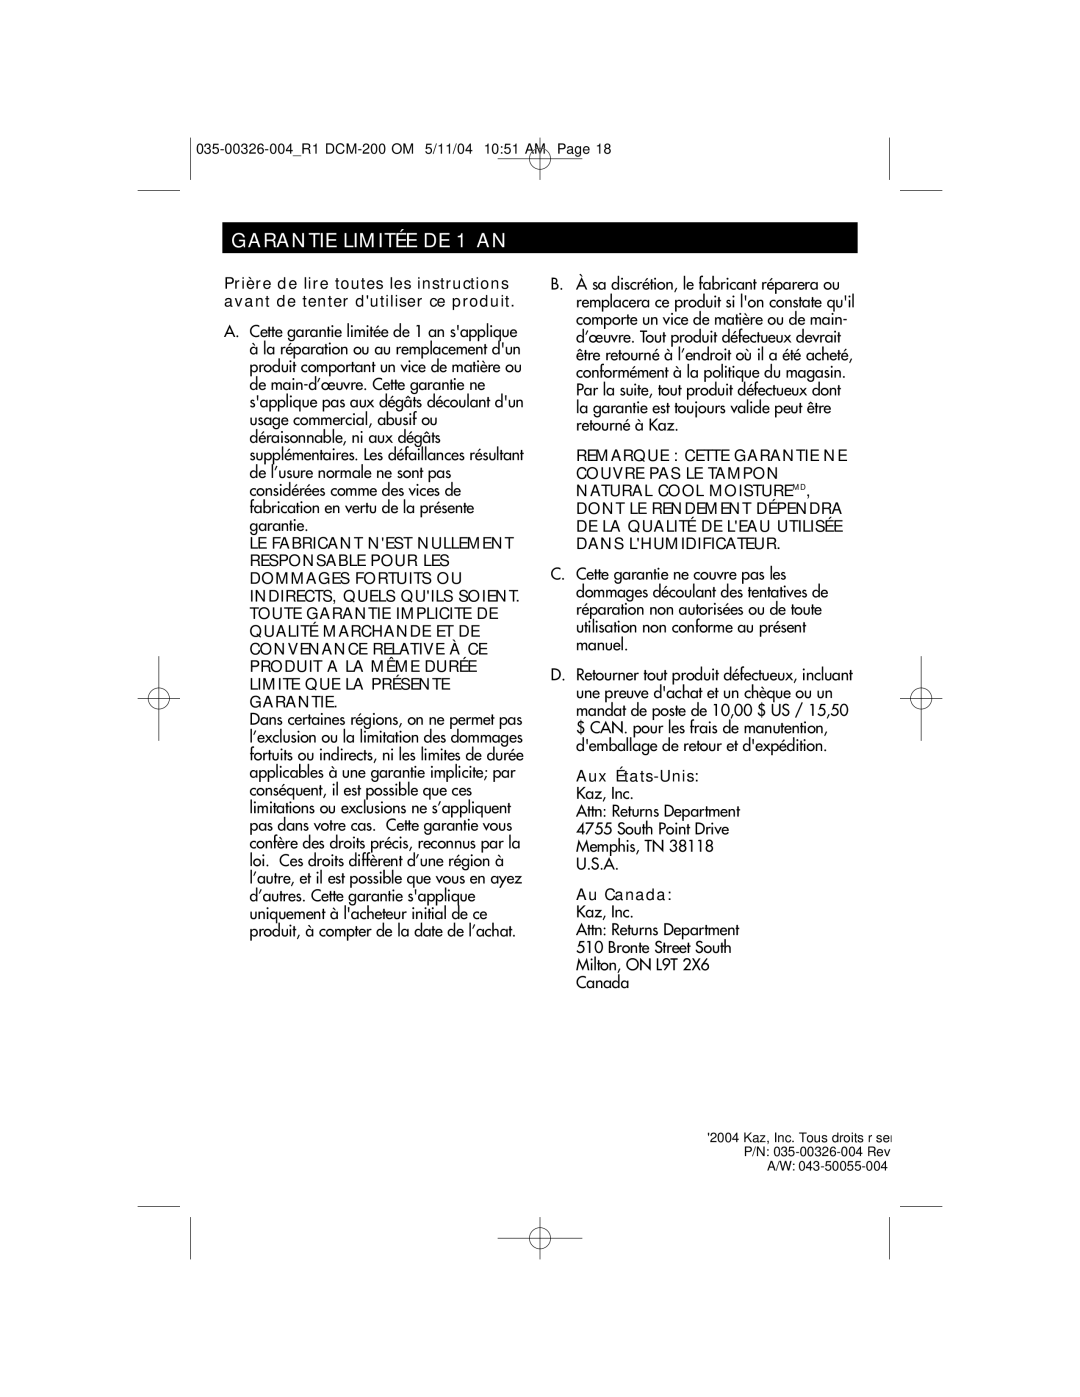 Duracraft DCM-200 owner manual Garantie Limitée DE 1 AN, Aux États-Unis Kaz, Inc, Au Canada Kaz, Inc 